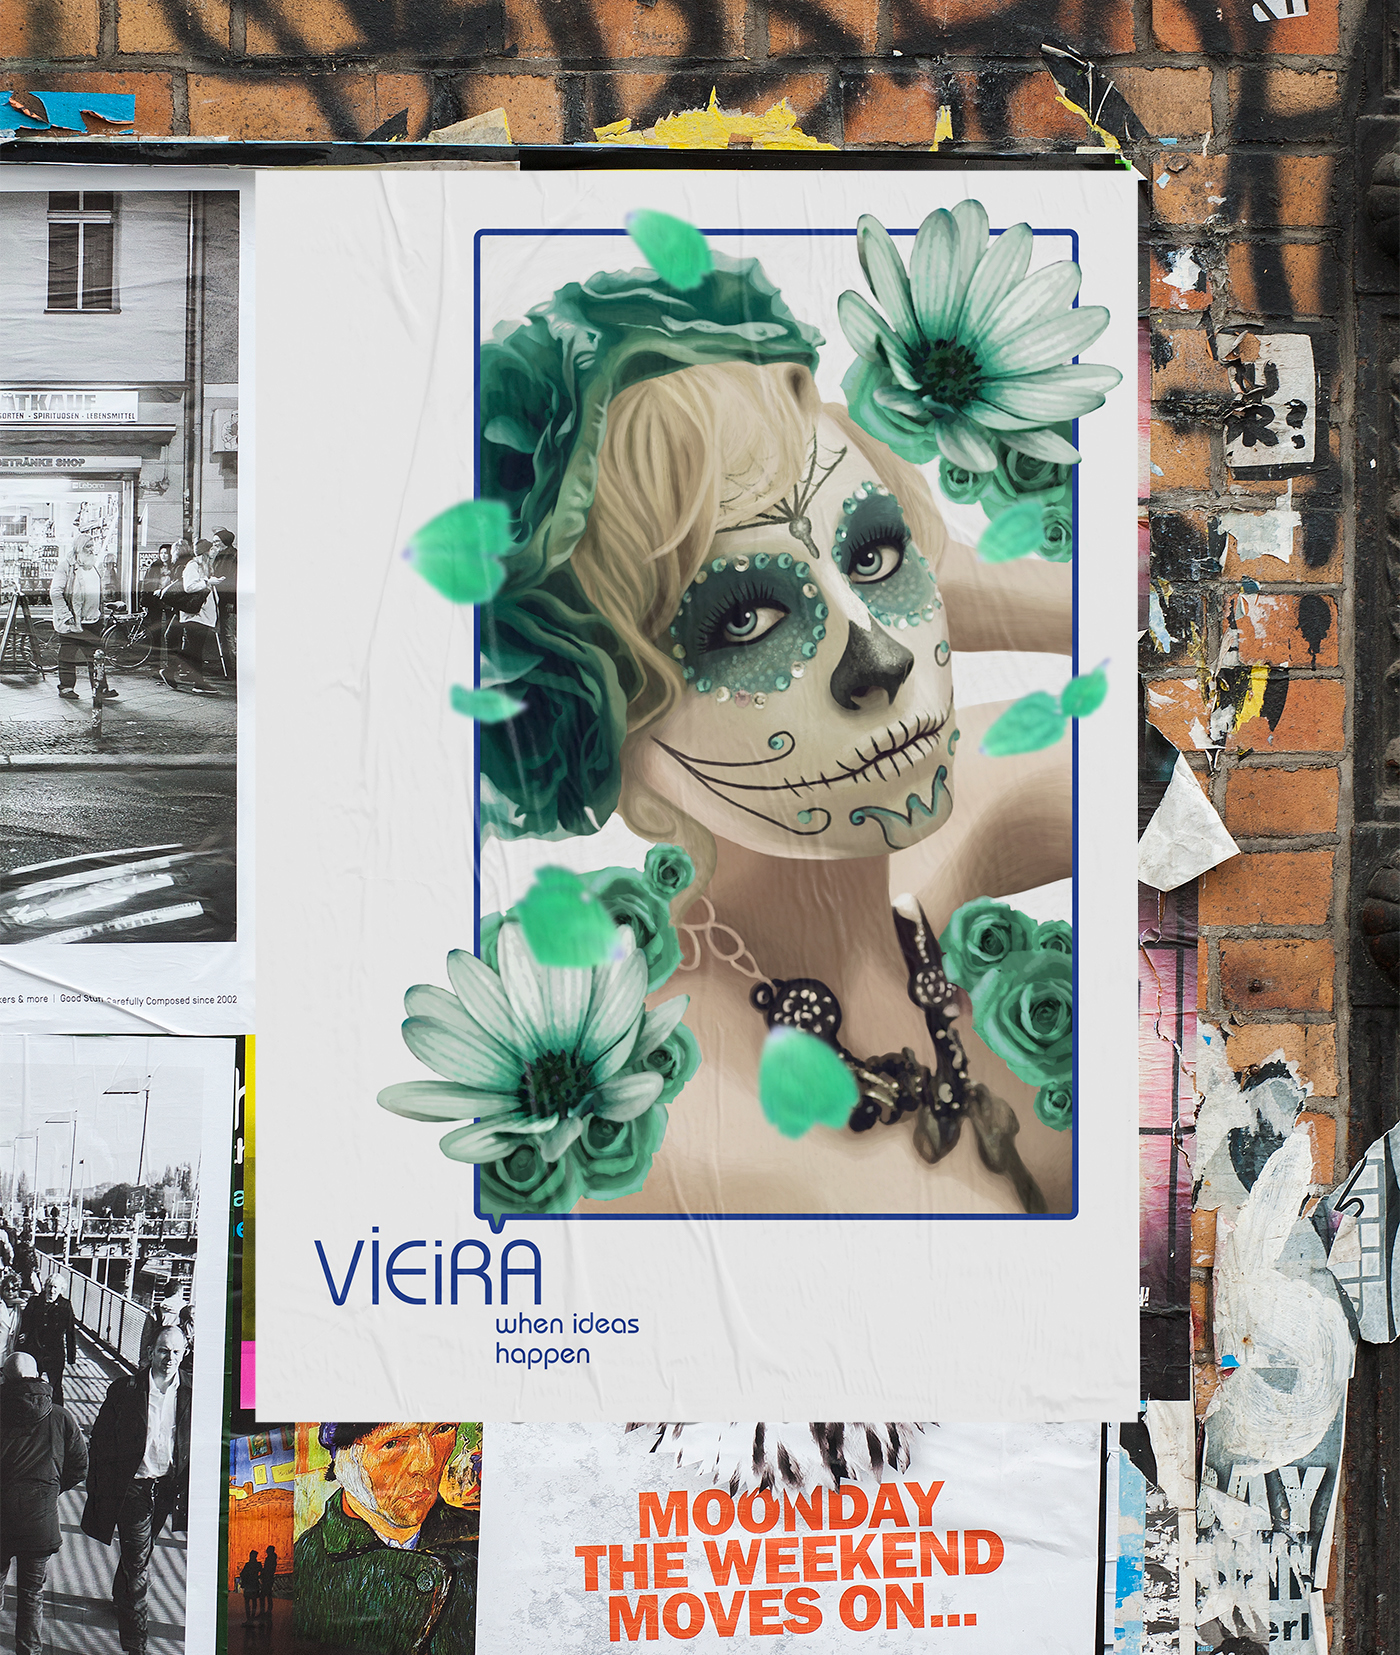 vieira portfolio Graphic Designer CV ideas creative poster business card brand Stationery